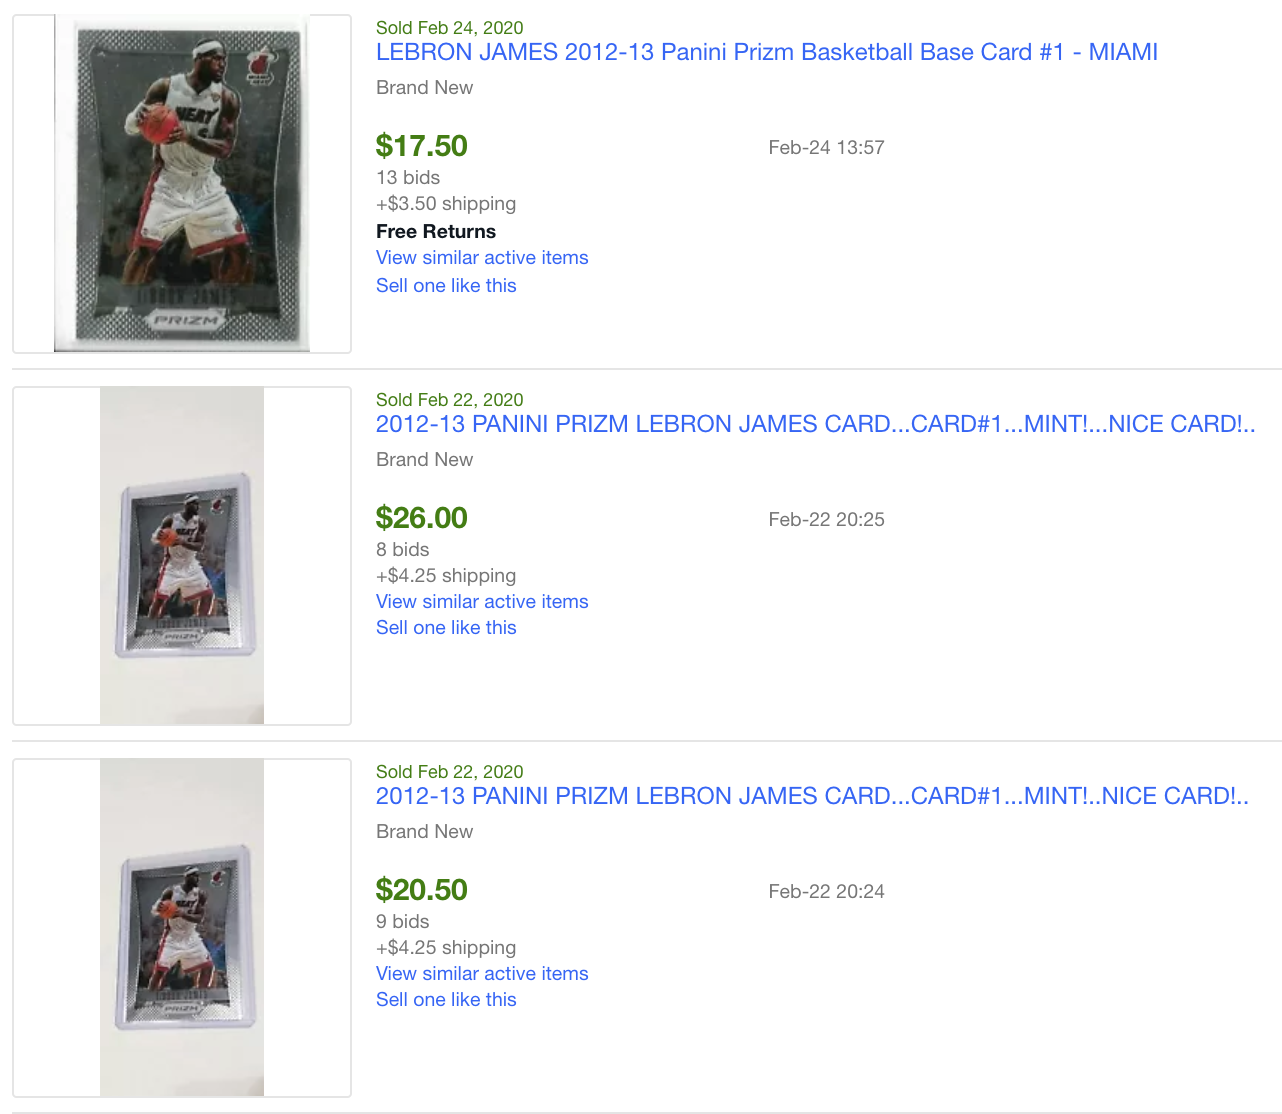 Image of eBay sold Lebron James cards.